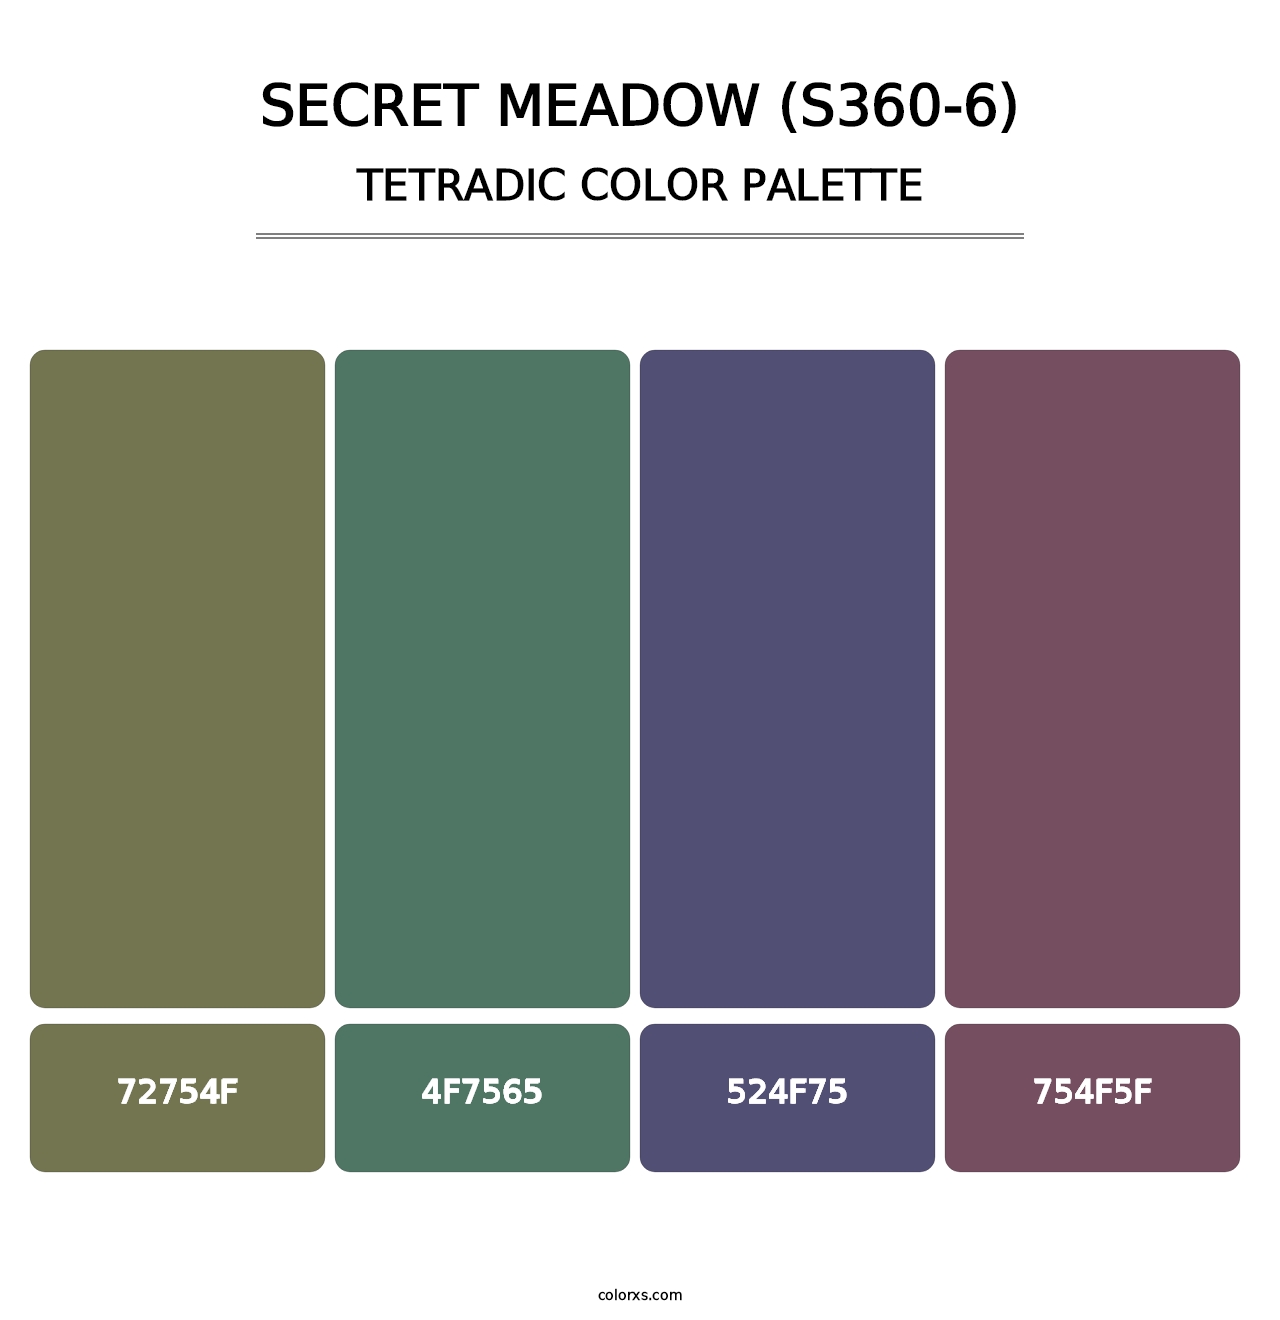 Secret Meadow (S360-6) - Tetradic Color Palette